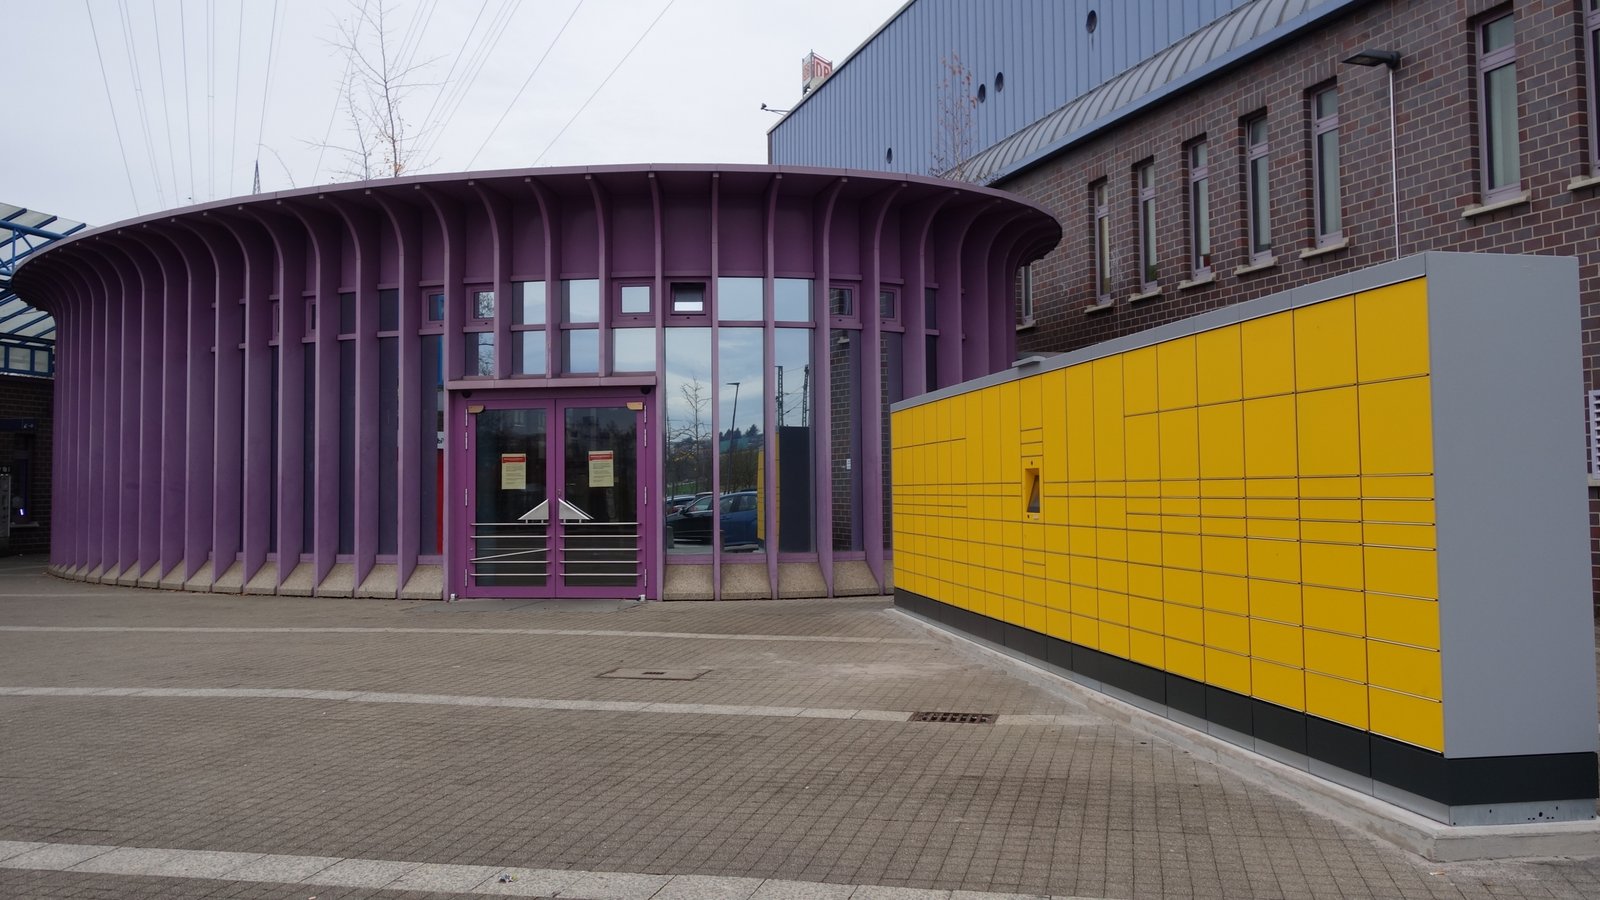 Unübersehbar: die neue gelbe DHL-Packstation im Eingangsbereich des Vaihinger Bahnhofs.  Foto: Rücker